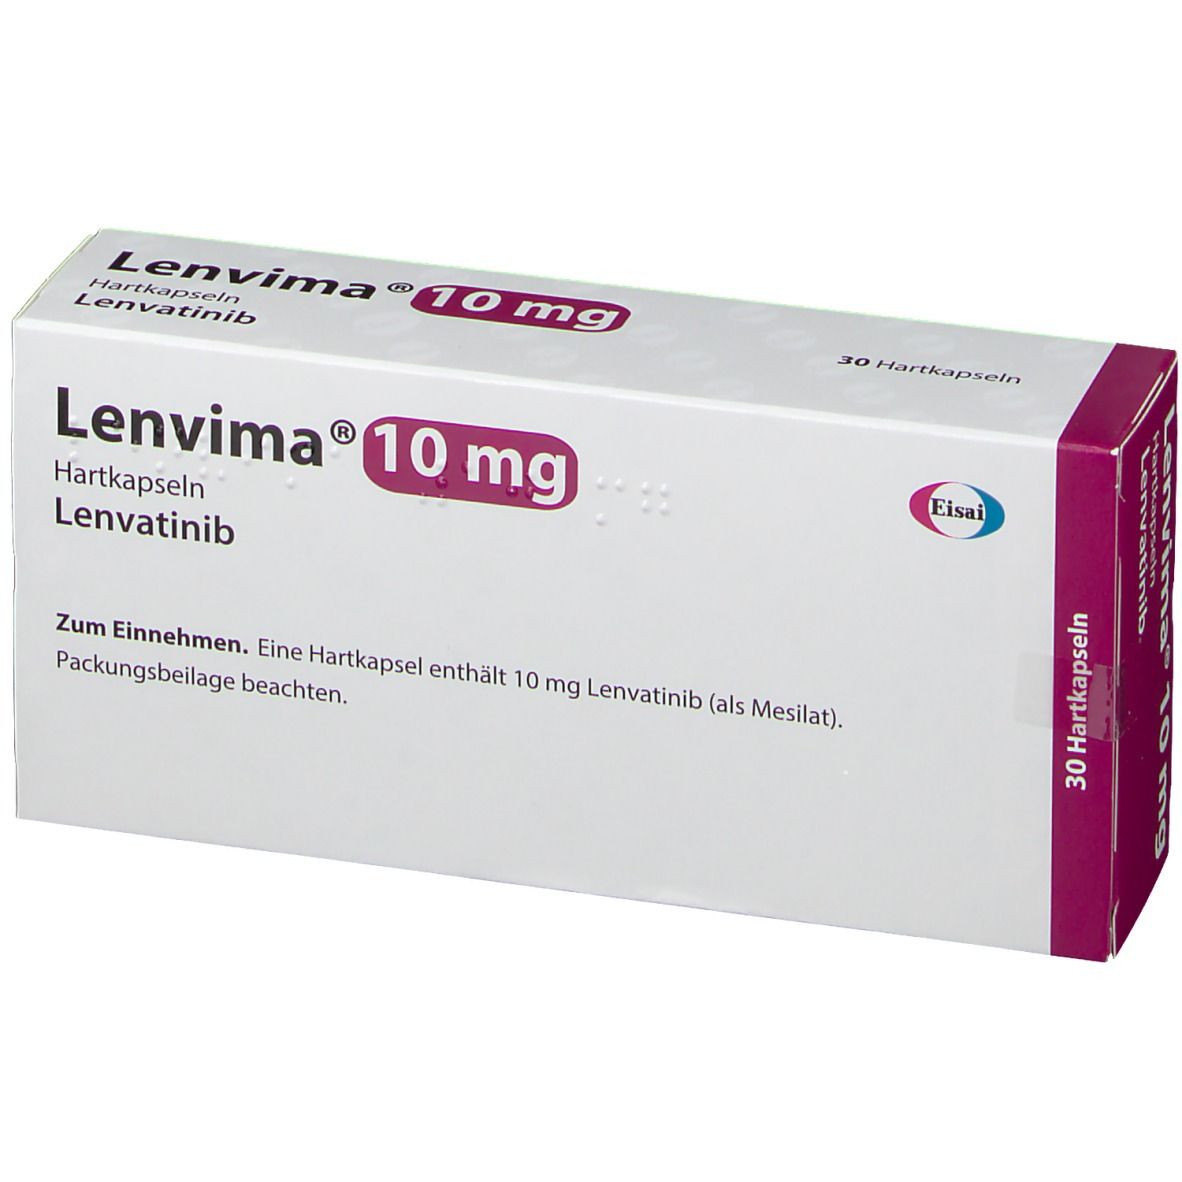 乐伐替尼（Lenvima）用法用量及注意事项详解_香港济民药业